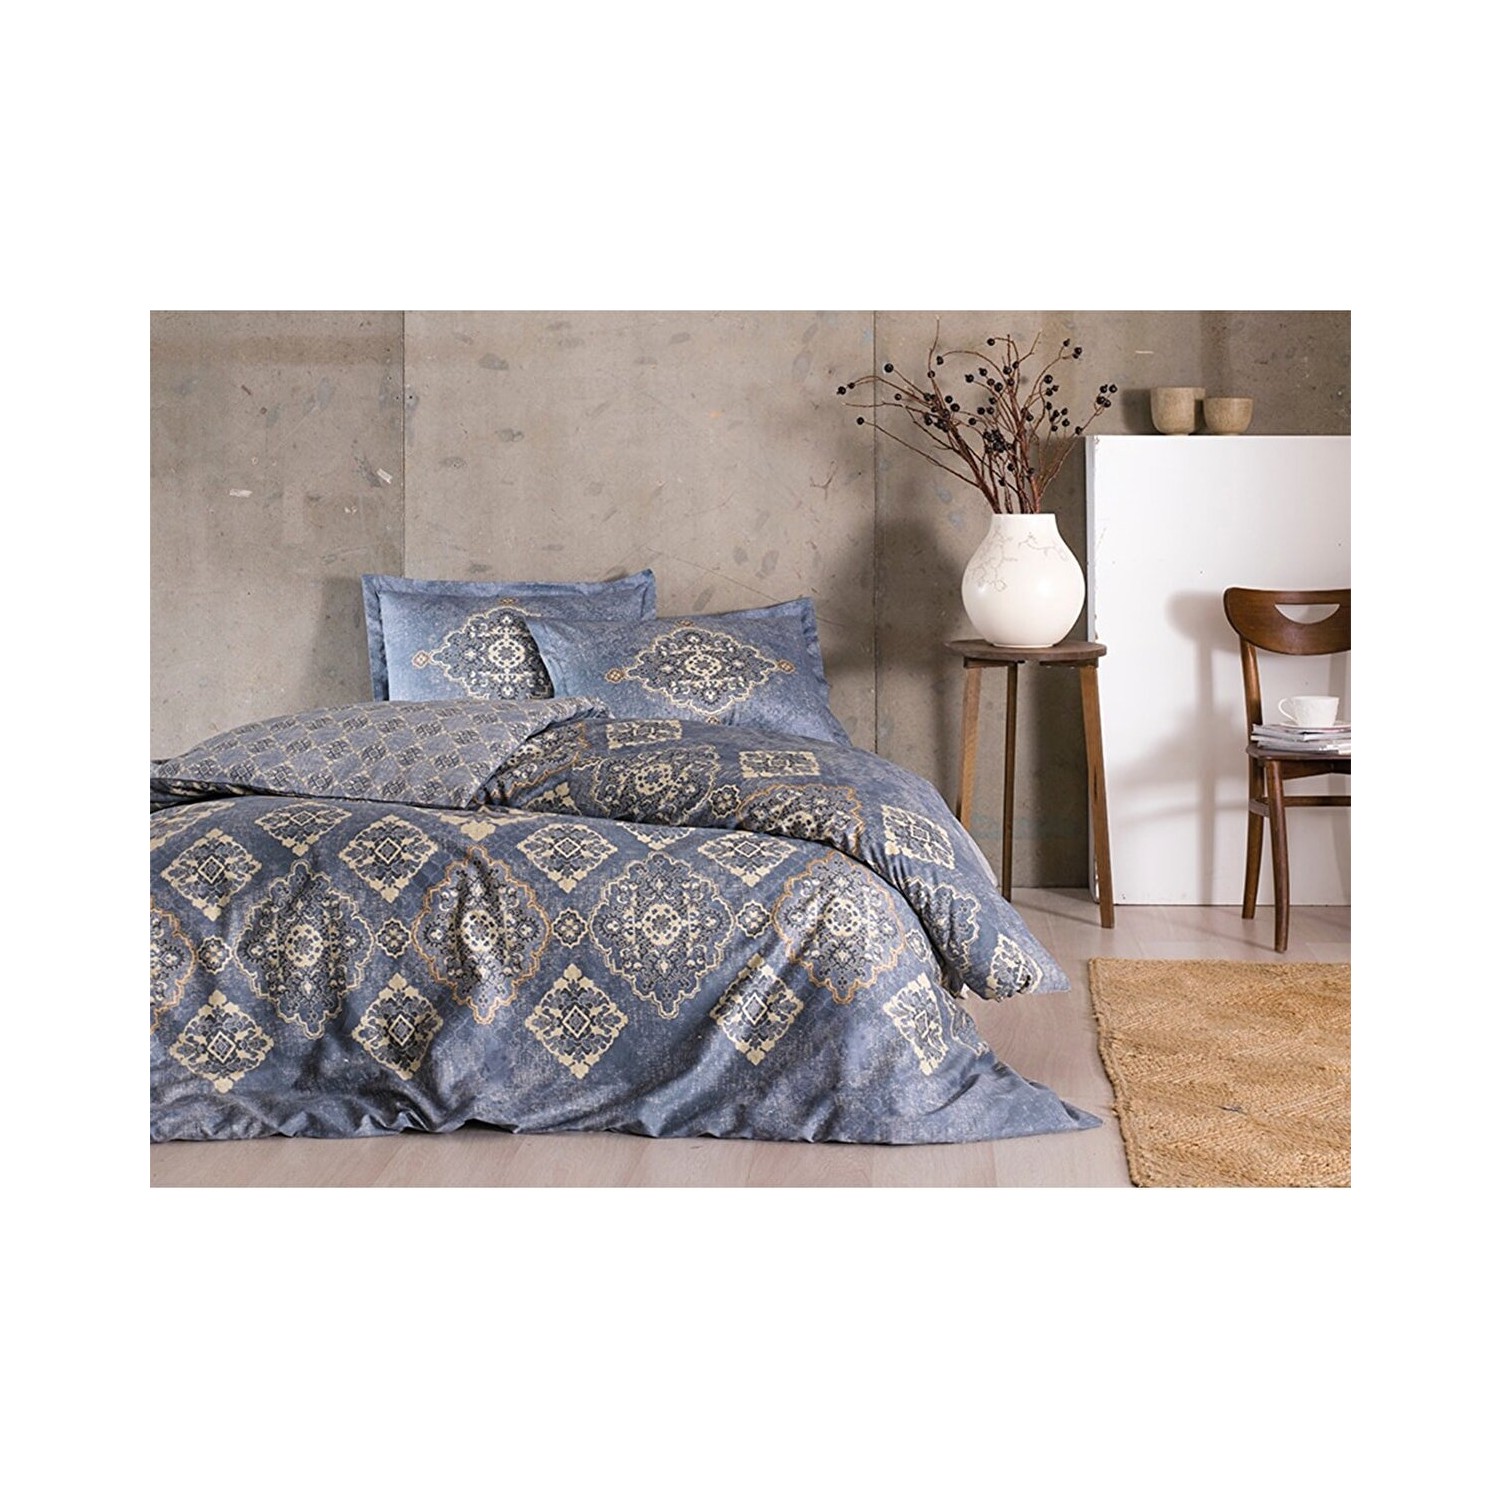 Комплект постельного белья Tac Marilla темно-синего атласного цвета